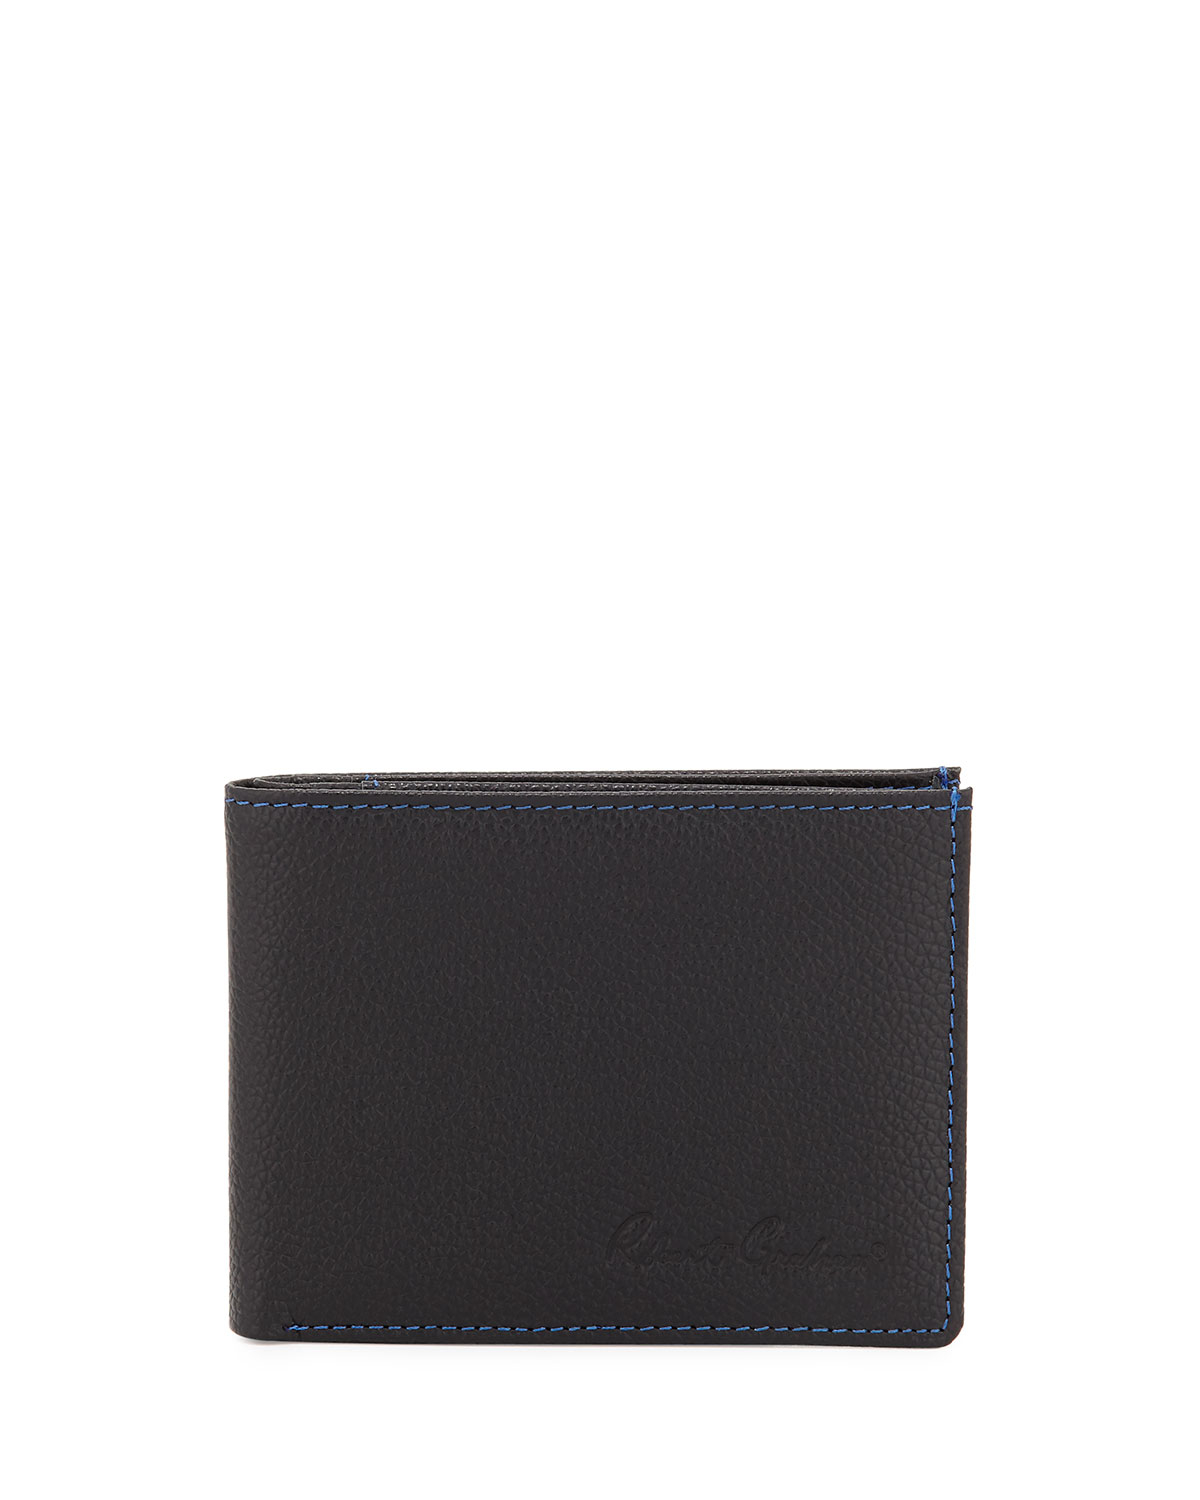 Robert graham Pratt Leather Bi-fold Wallet in Black for Men | Lyst